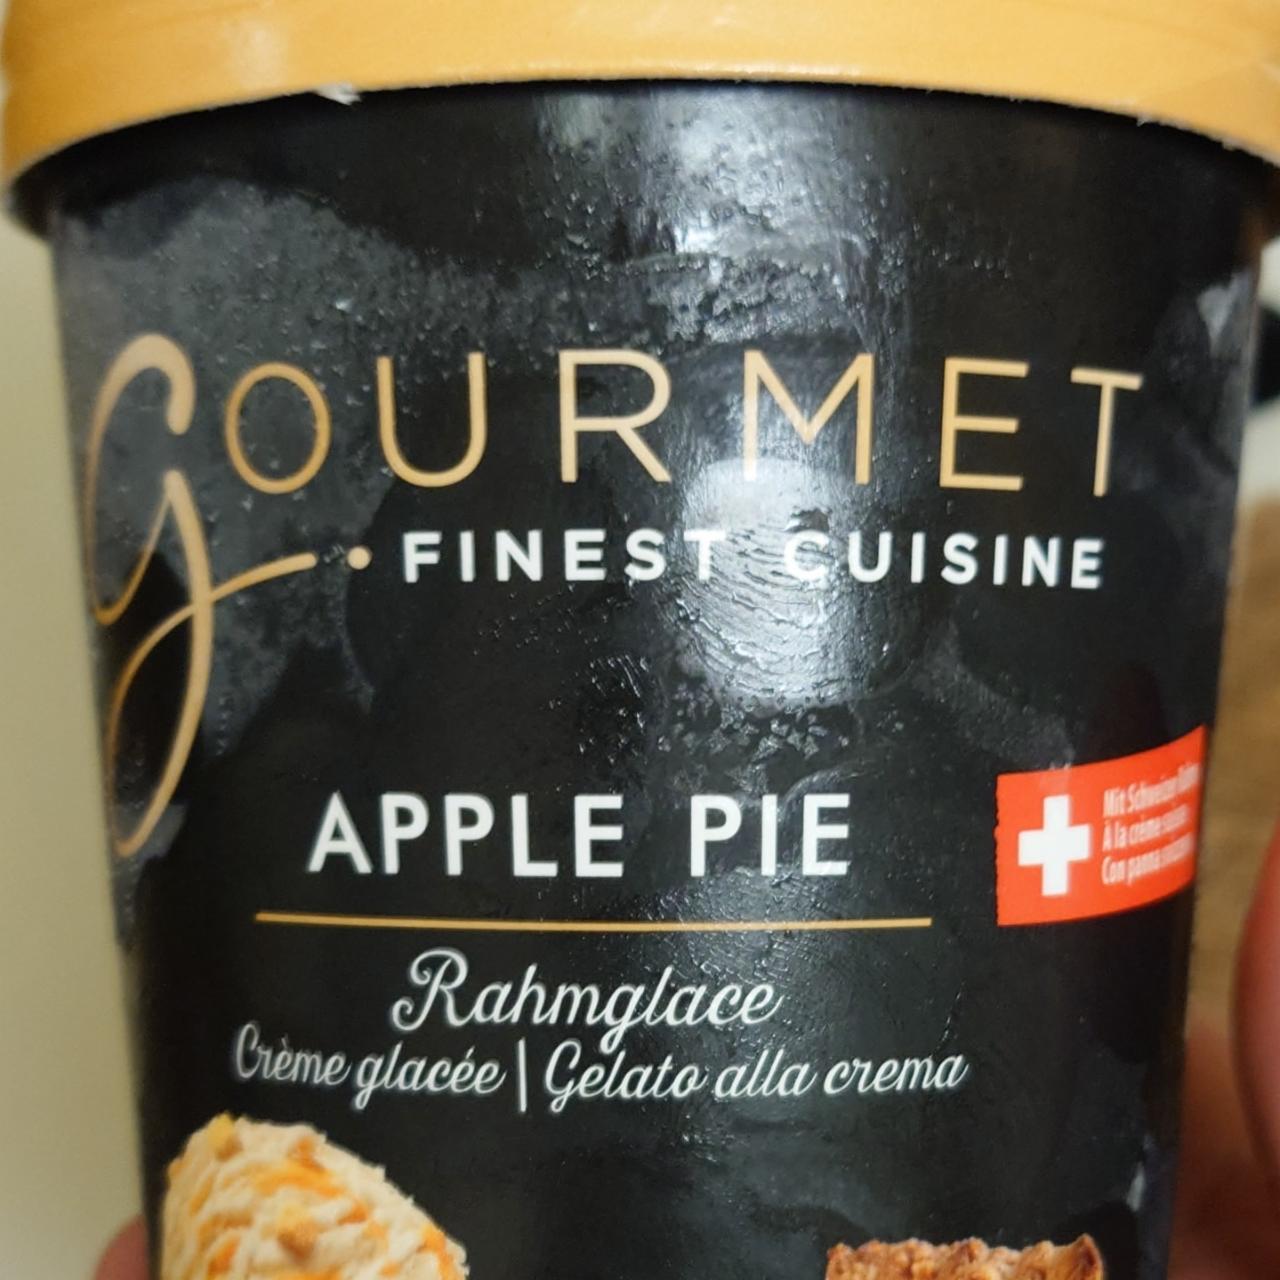 Fotografie - Apple Pie Rahmglace Gourmet finest cuisine